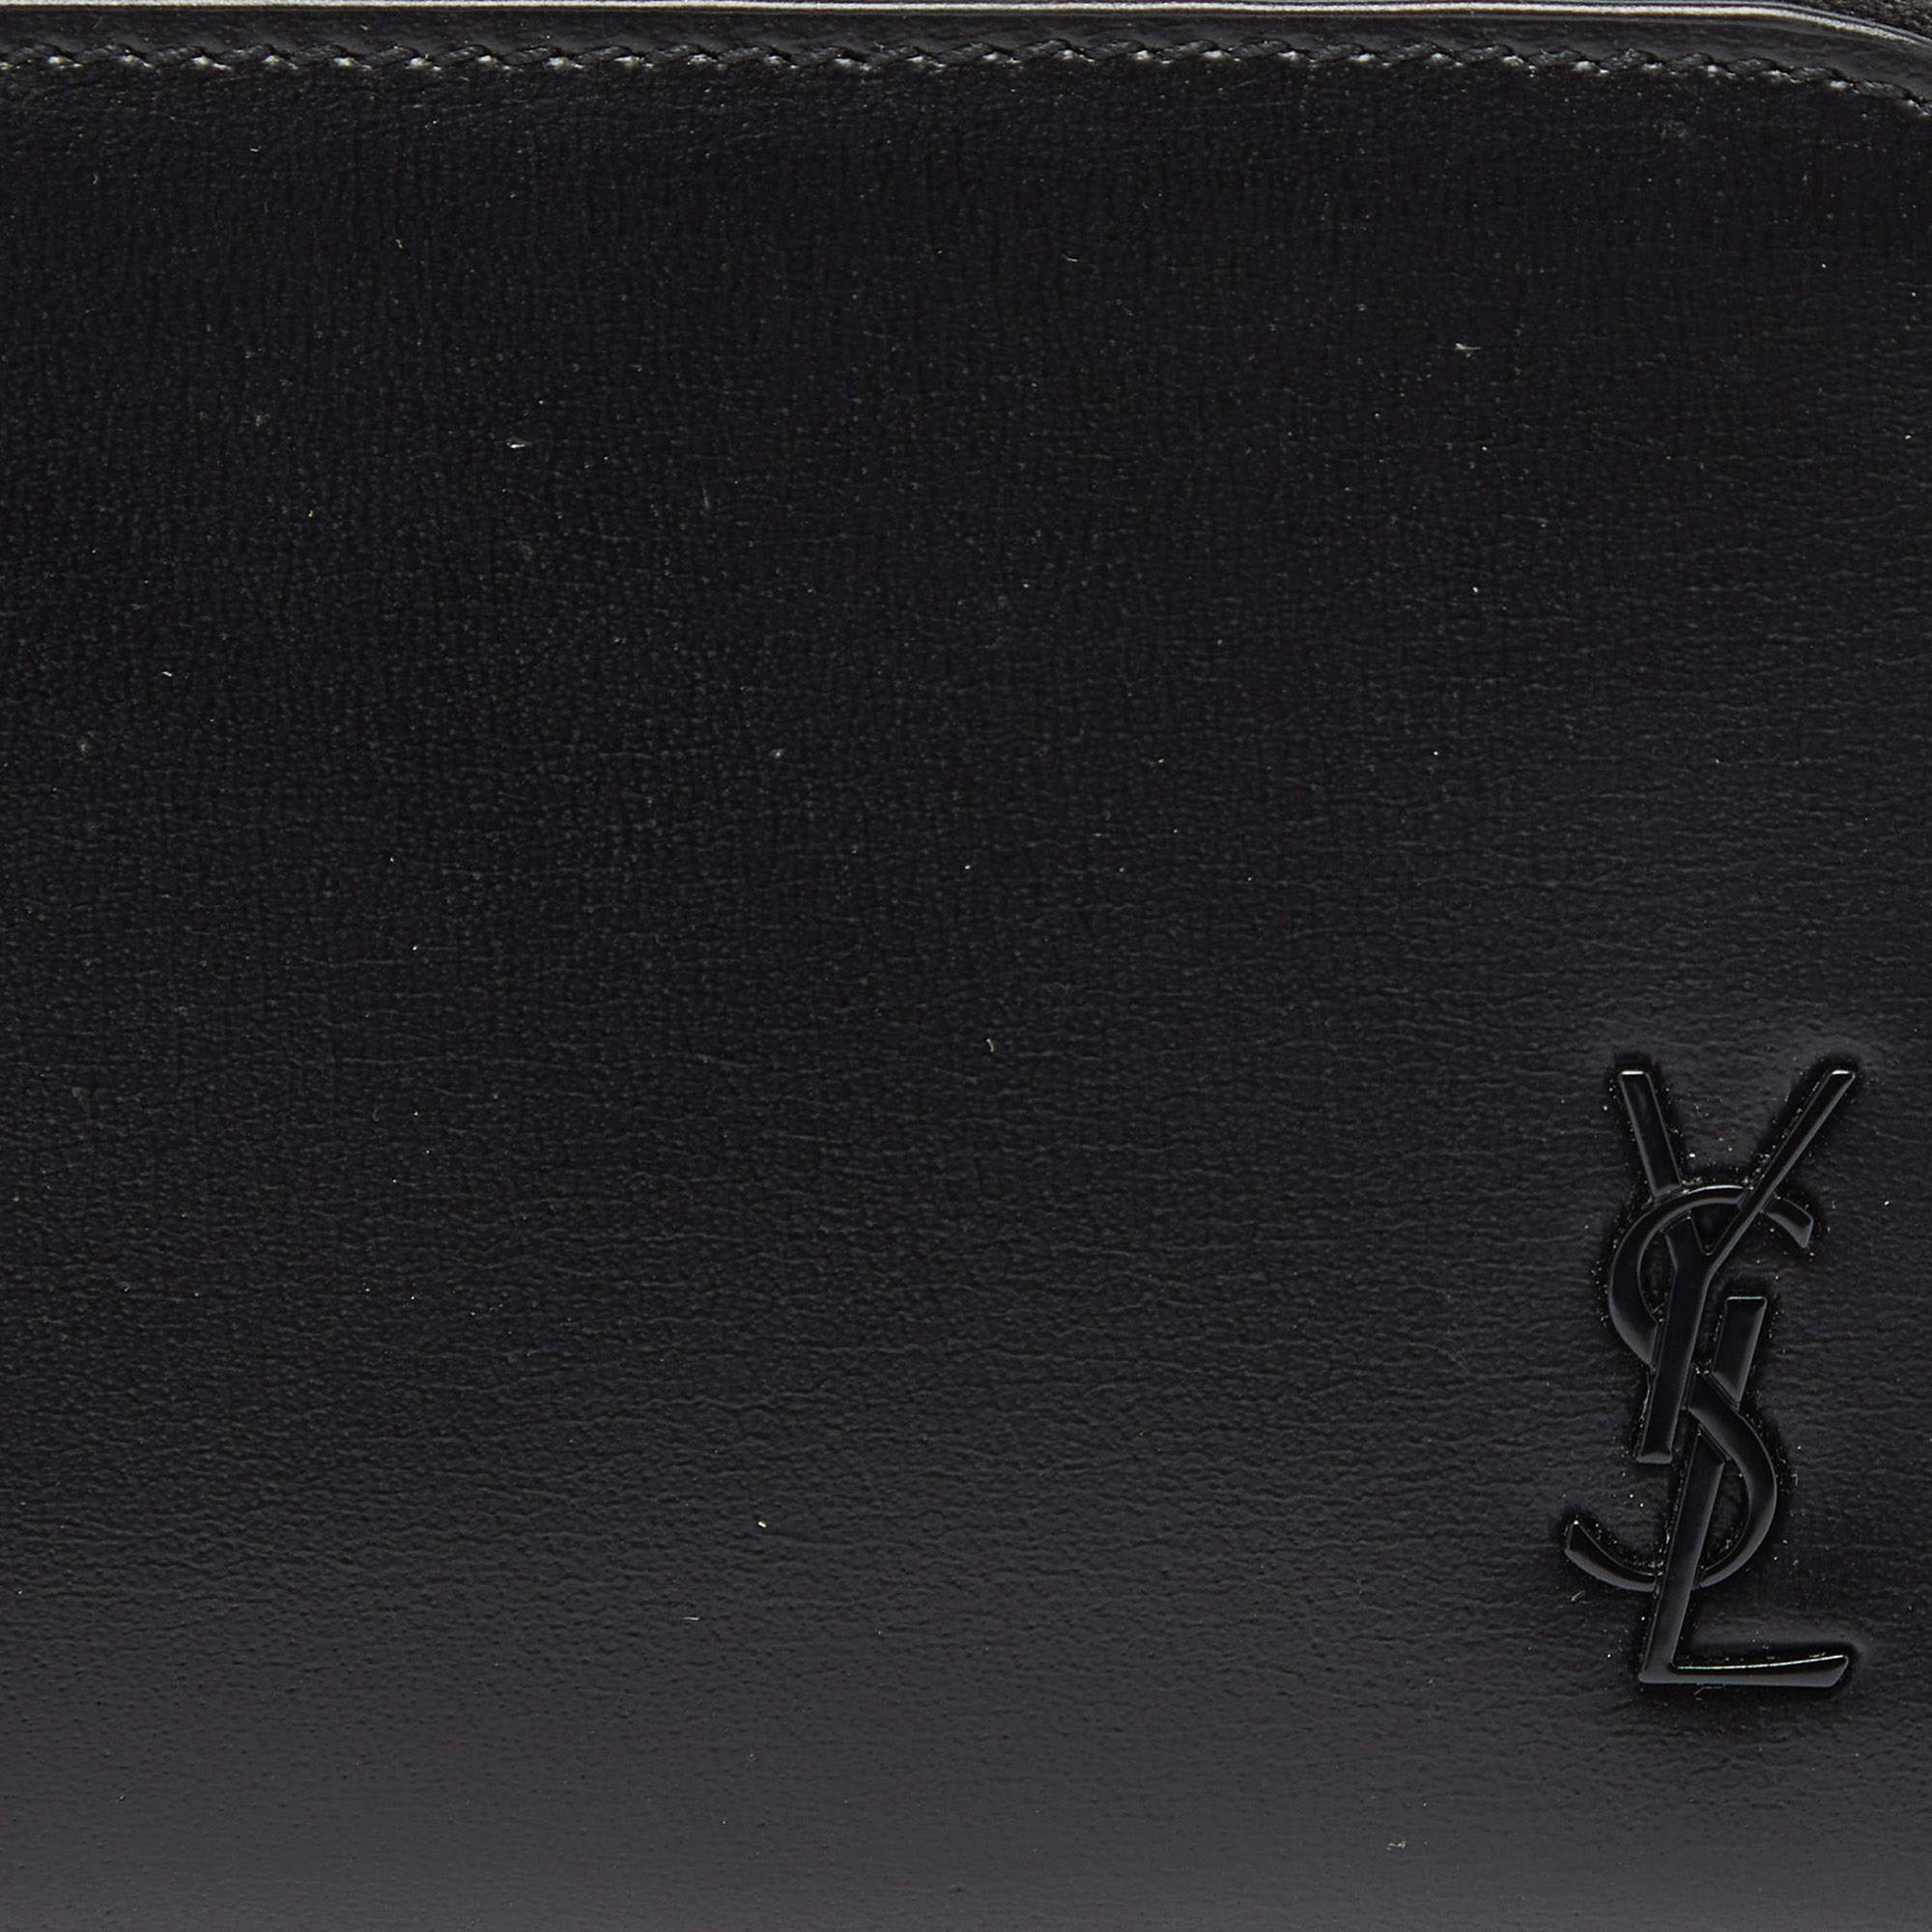 Saint Laurent Grey Compact Zip-Around Wallet – BlackSkinny